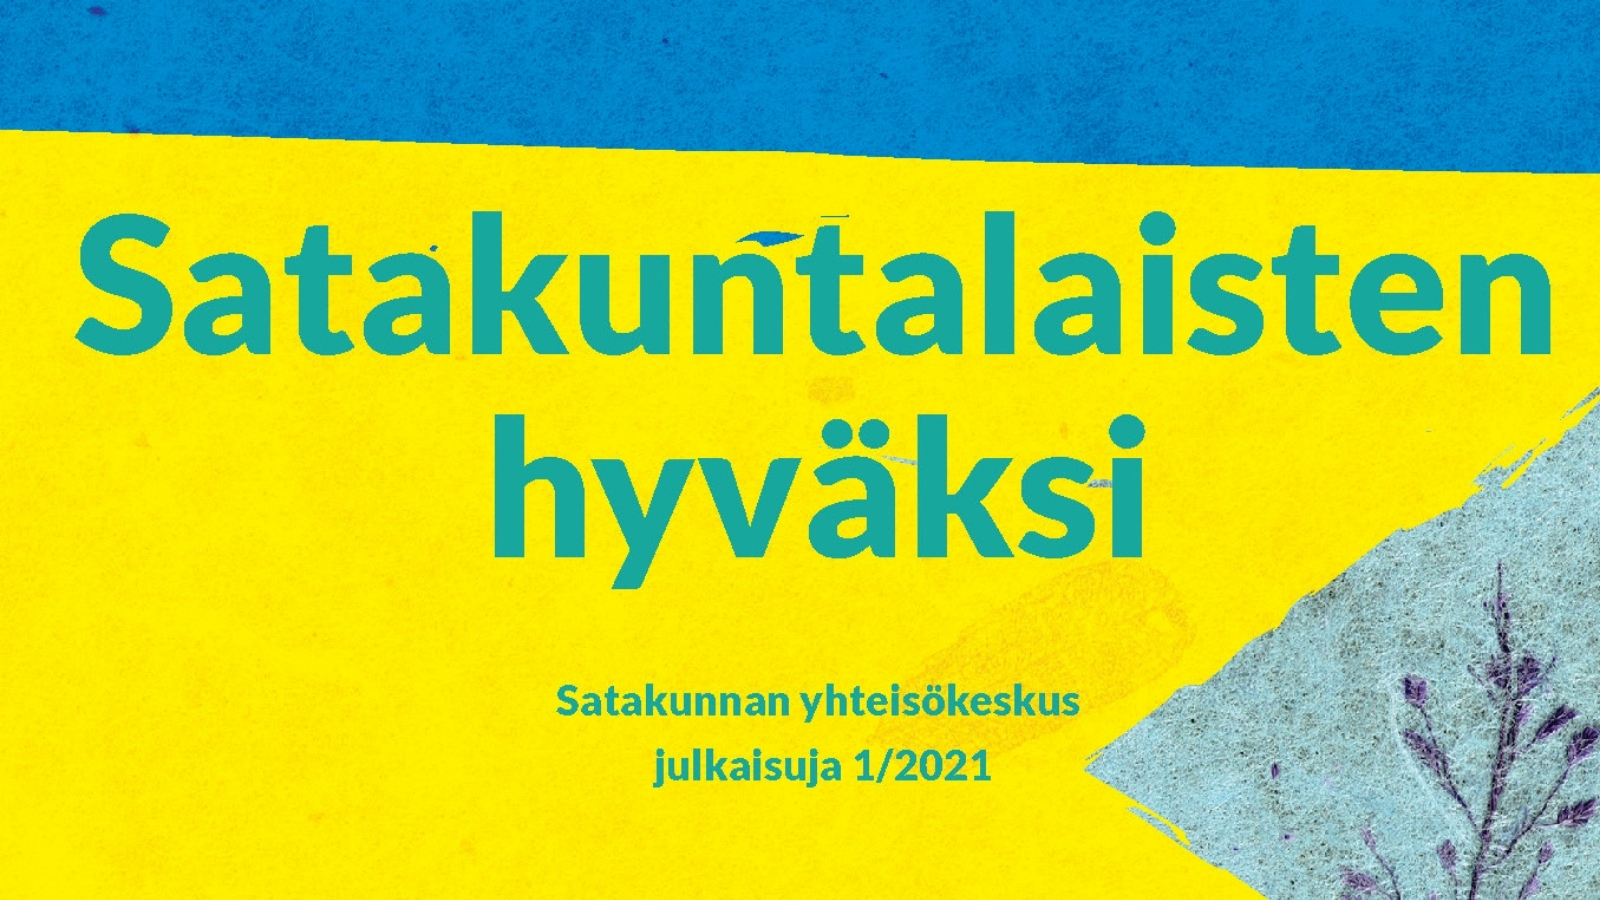 Satakuntalaisten hyväksy Satakunnan yhteisökeskus julkaisuja 1/2021